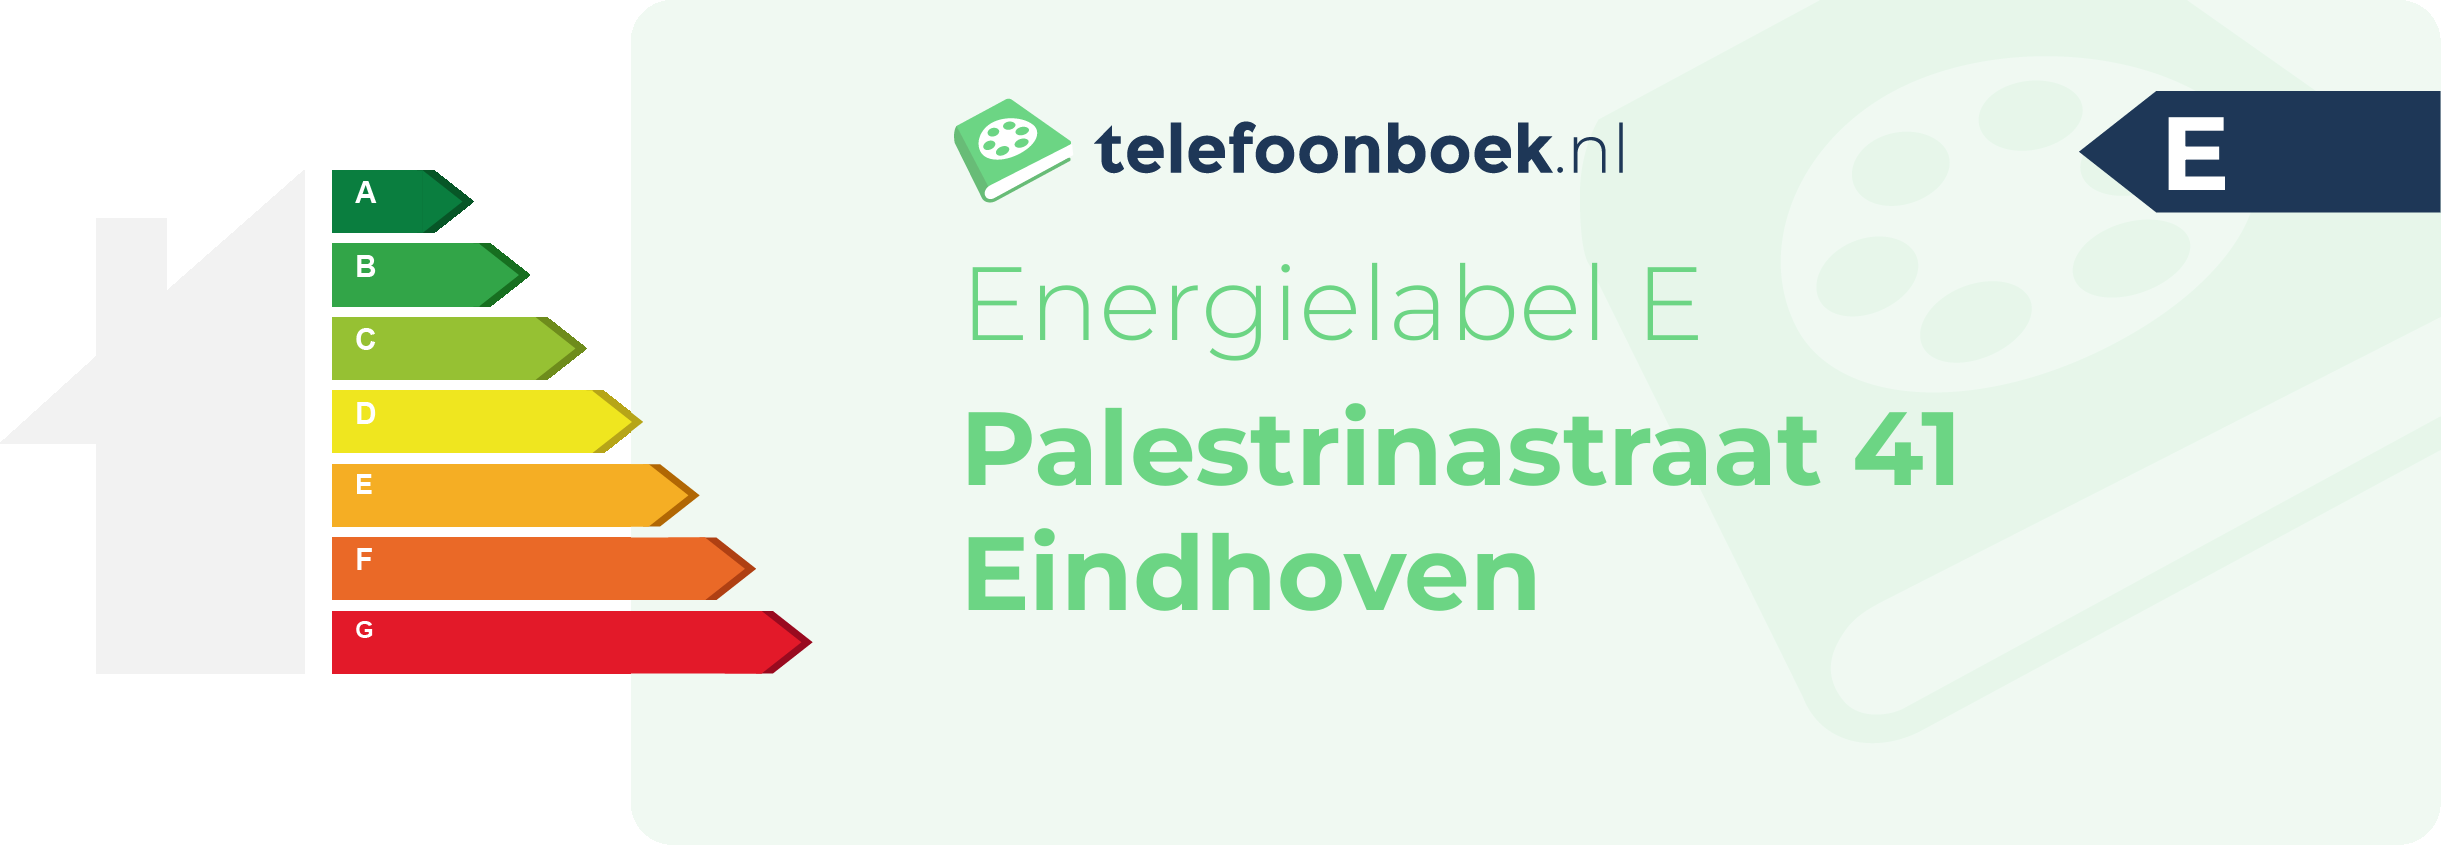 Energielabel Palestrinastraat 41 Eindhoven